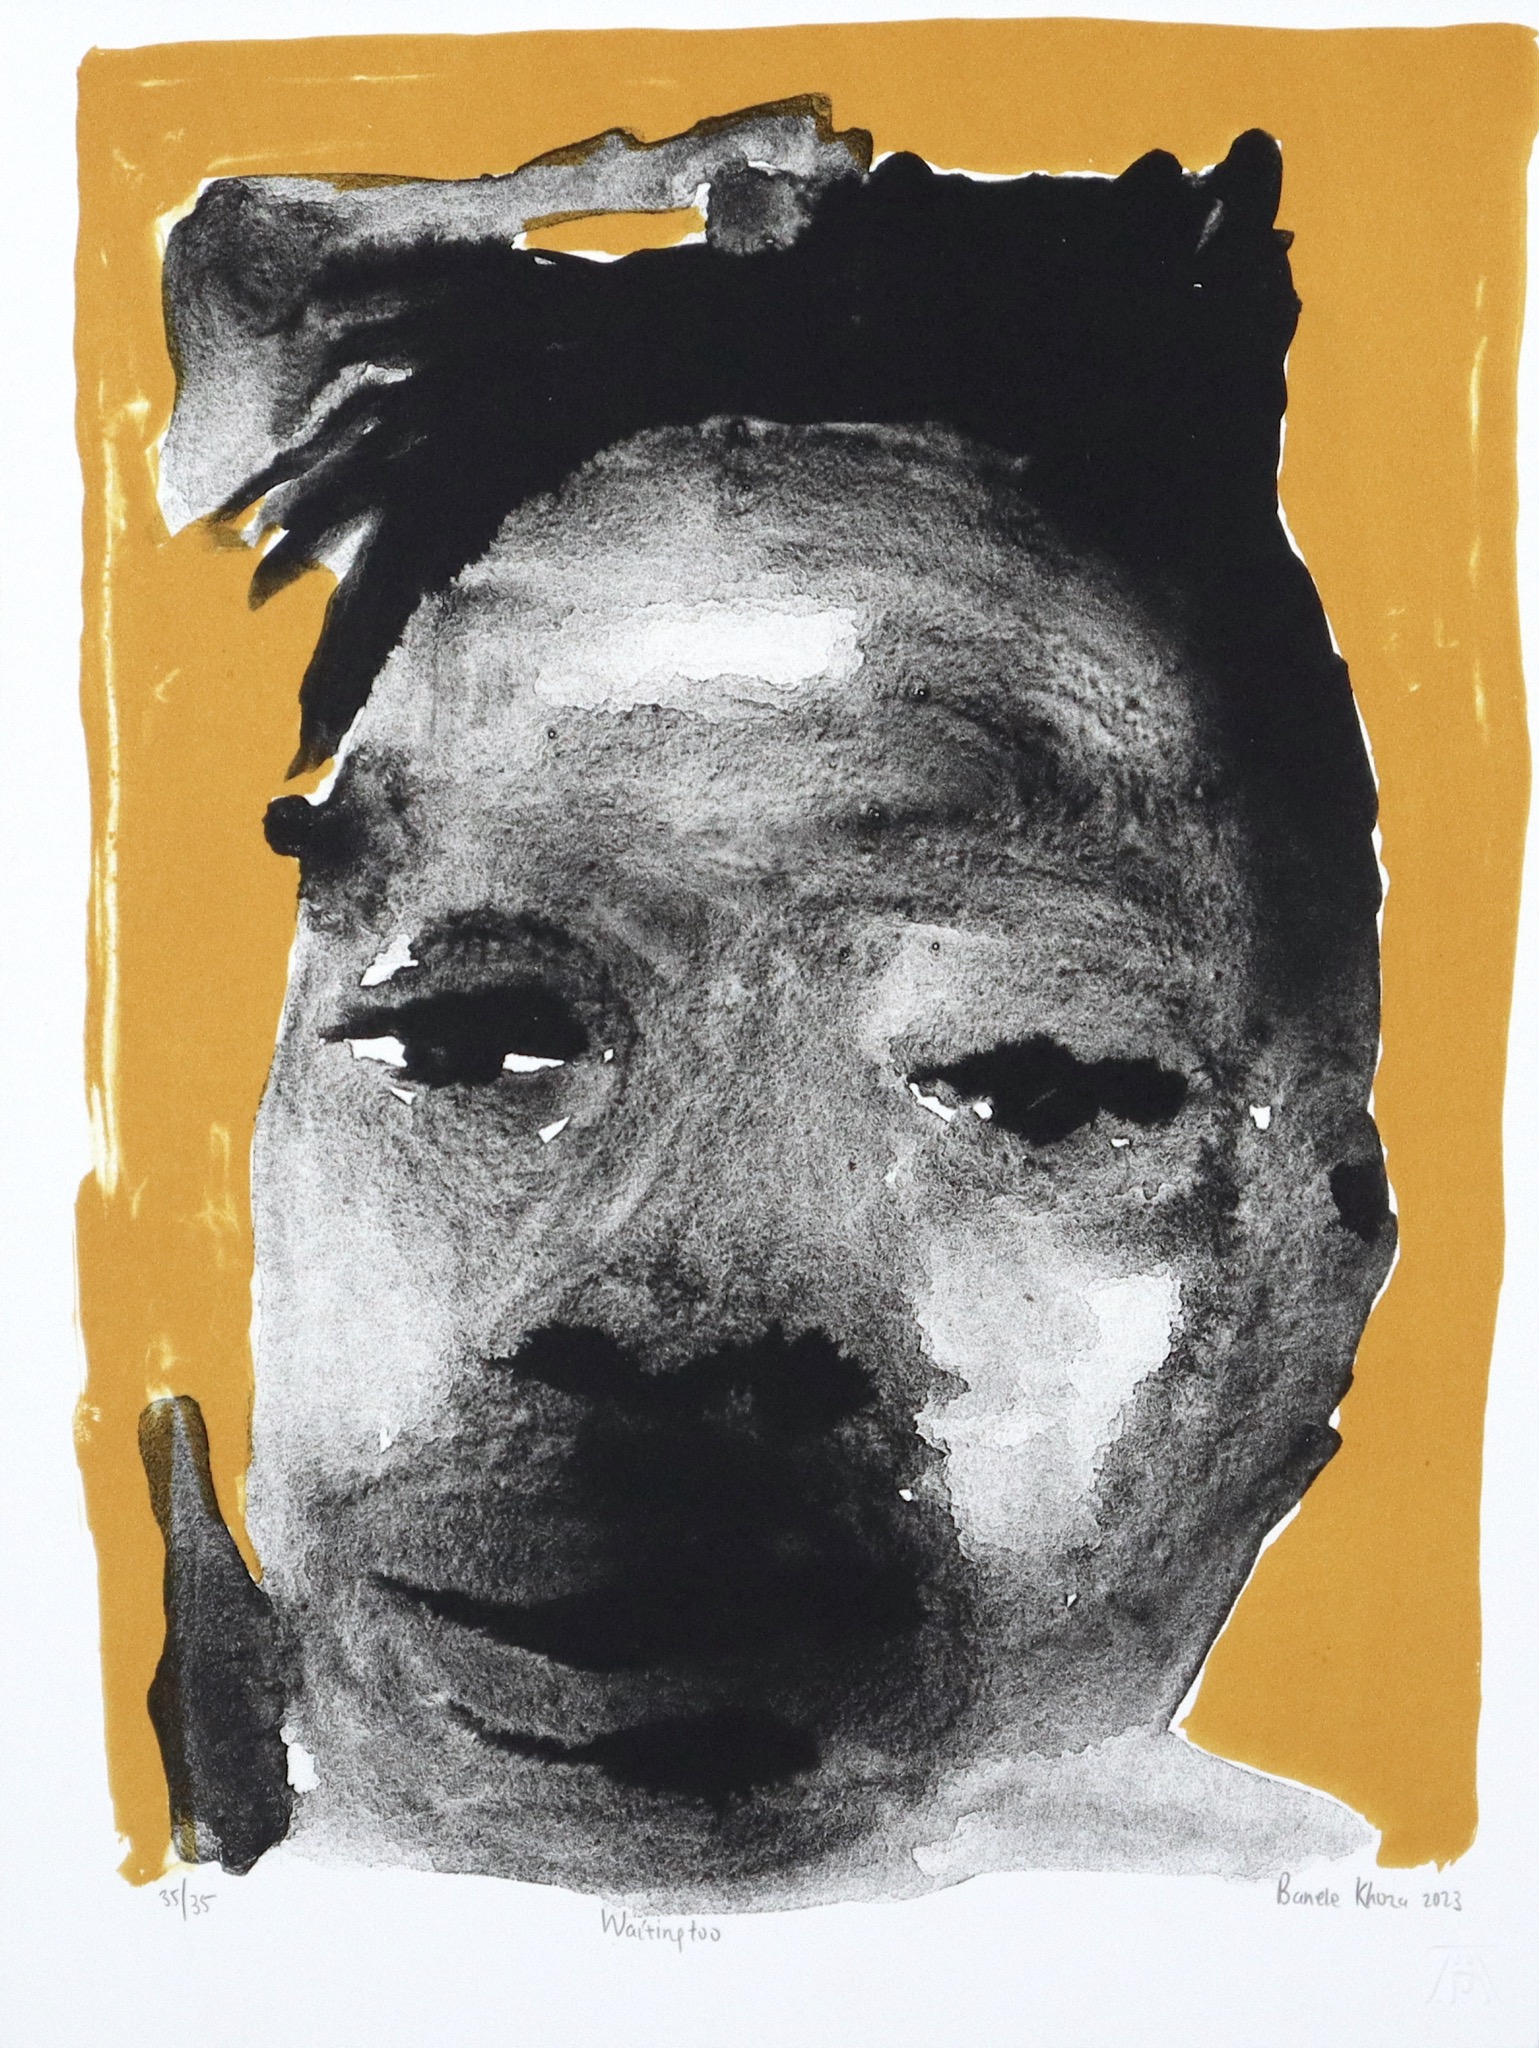 Banele Khoza lithograph of a man's head and shoulders